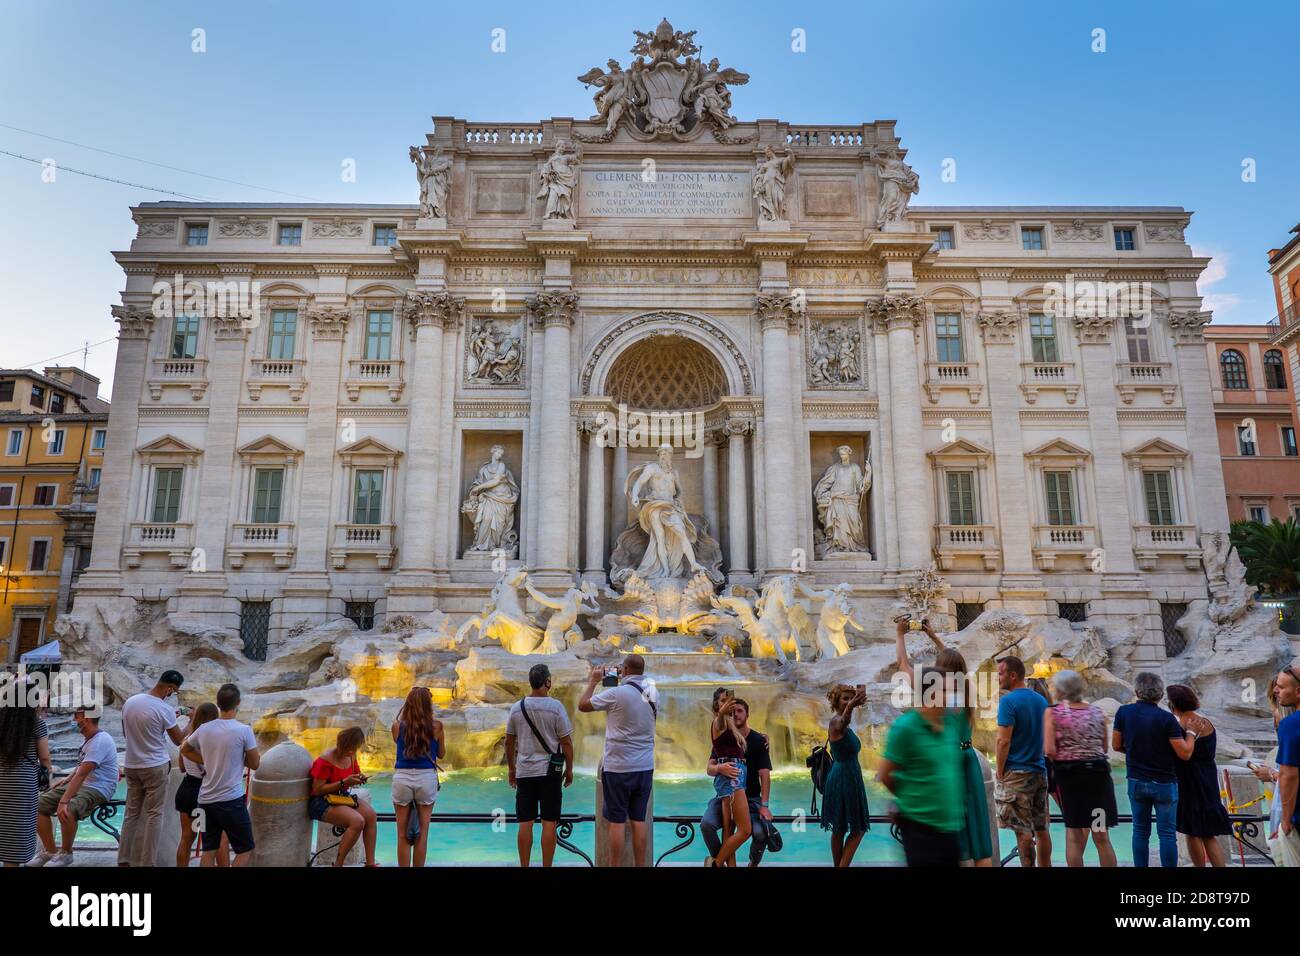 Ciudad de Roma, Italia, Fontana de Trevi (Fontana di Trevi) al atardecer y grupo de personas, los turistas disfrutan de la vista de un monumento mundialmente famoso Foto de stock